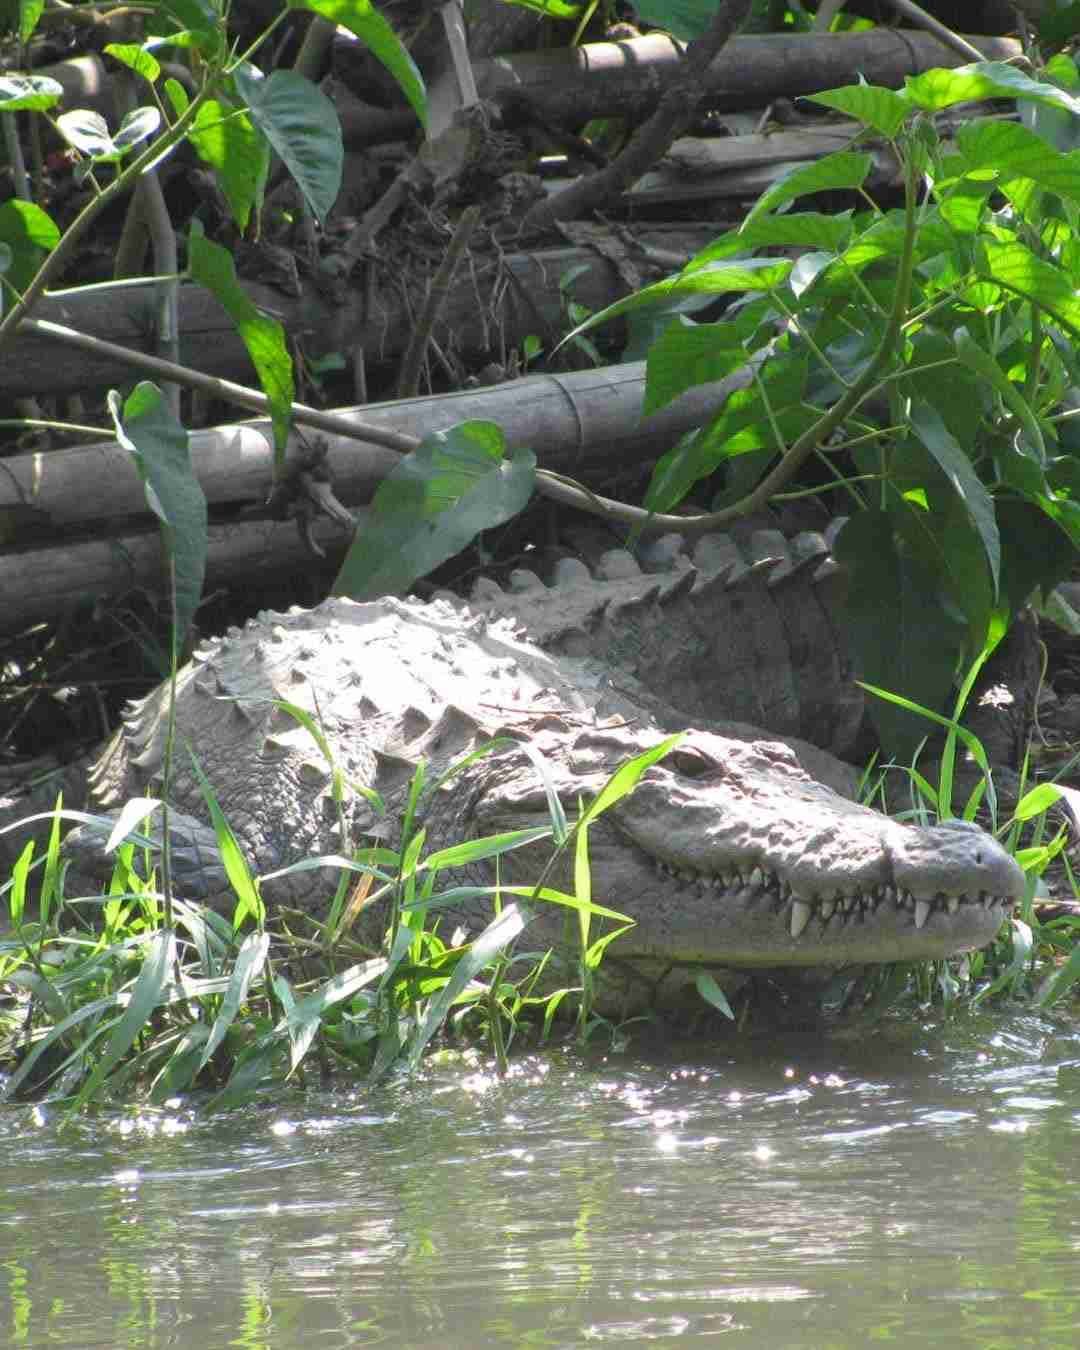 Dandeli Crocodile Park